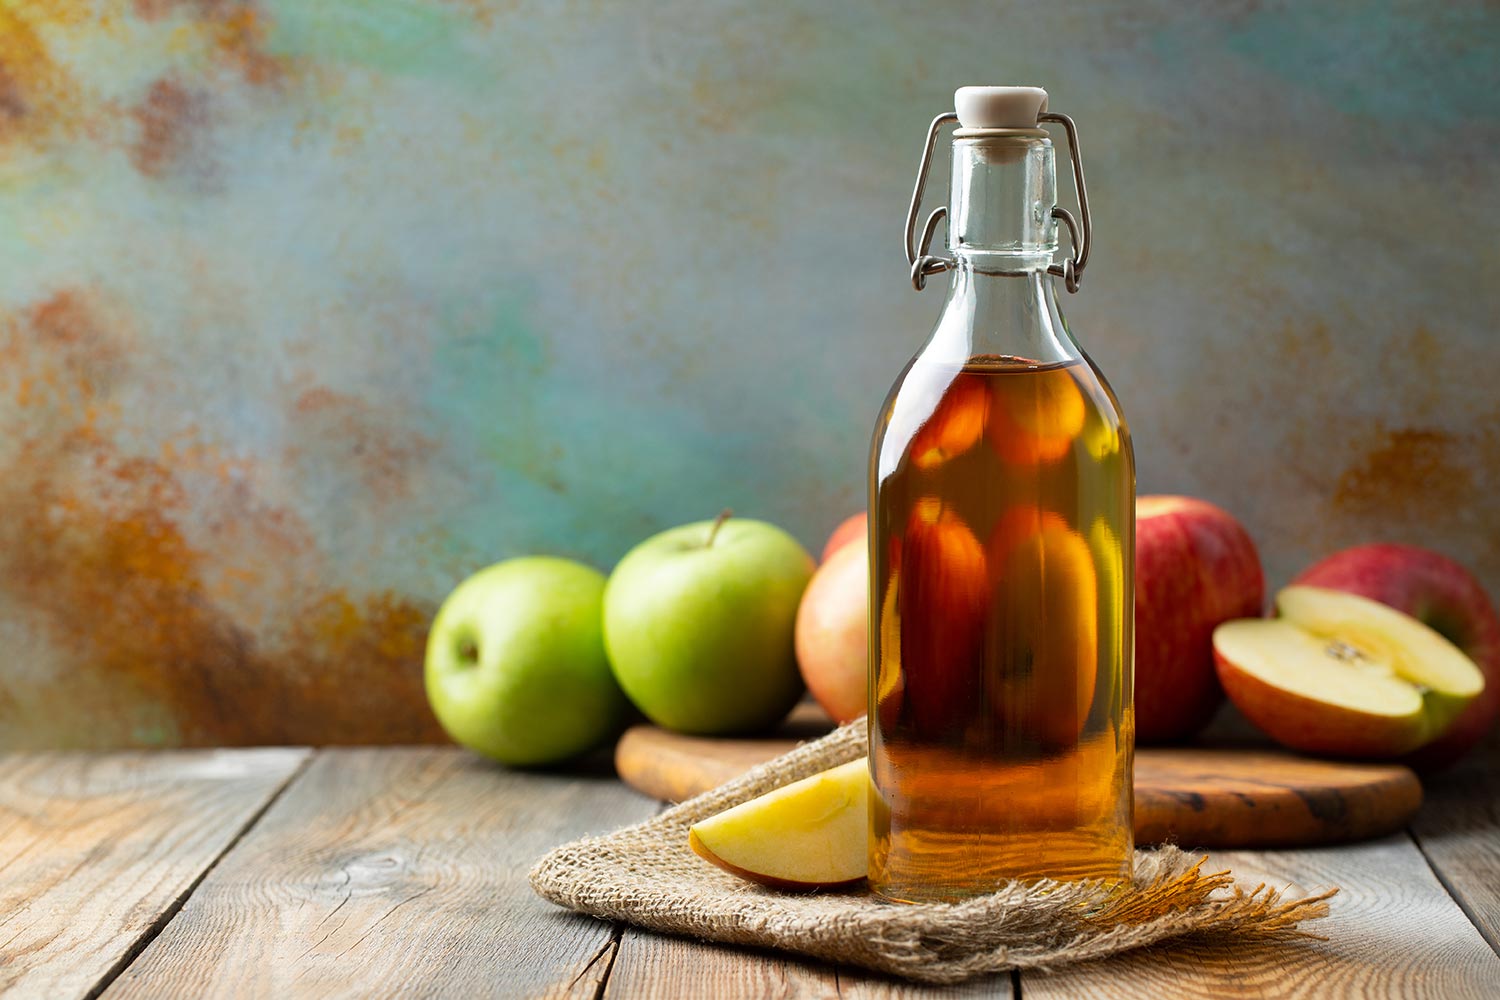 Bottle of apple organic vinegar or cider on wooden background